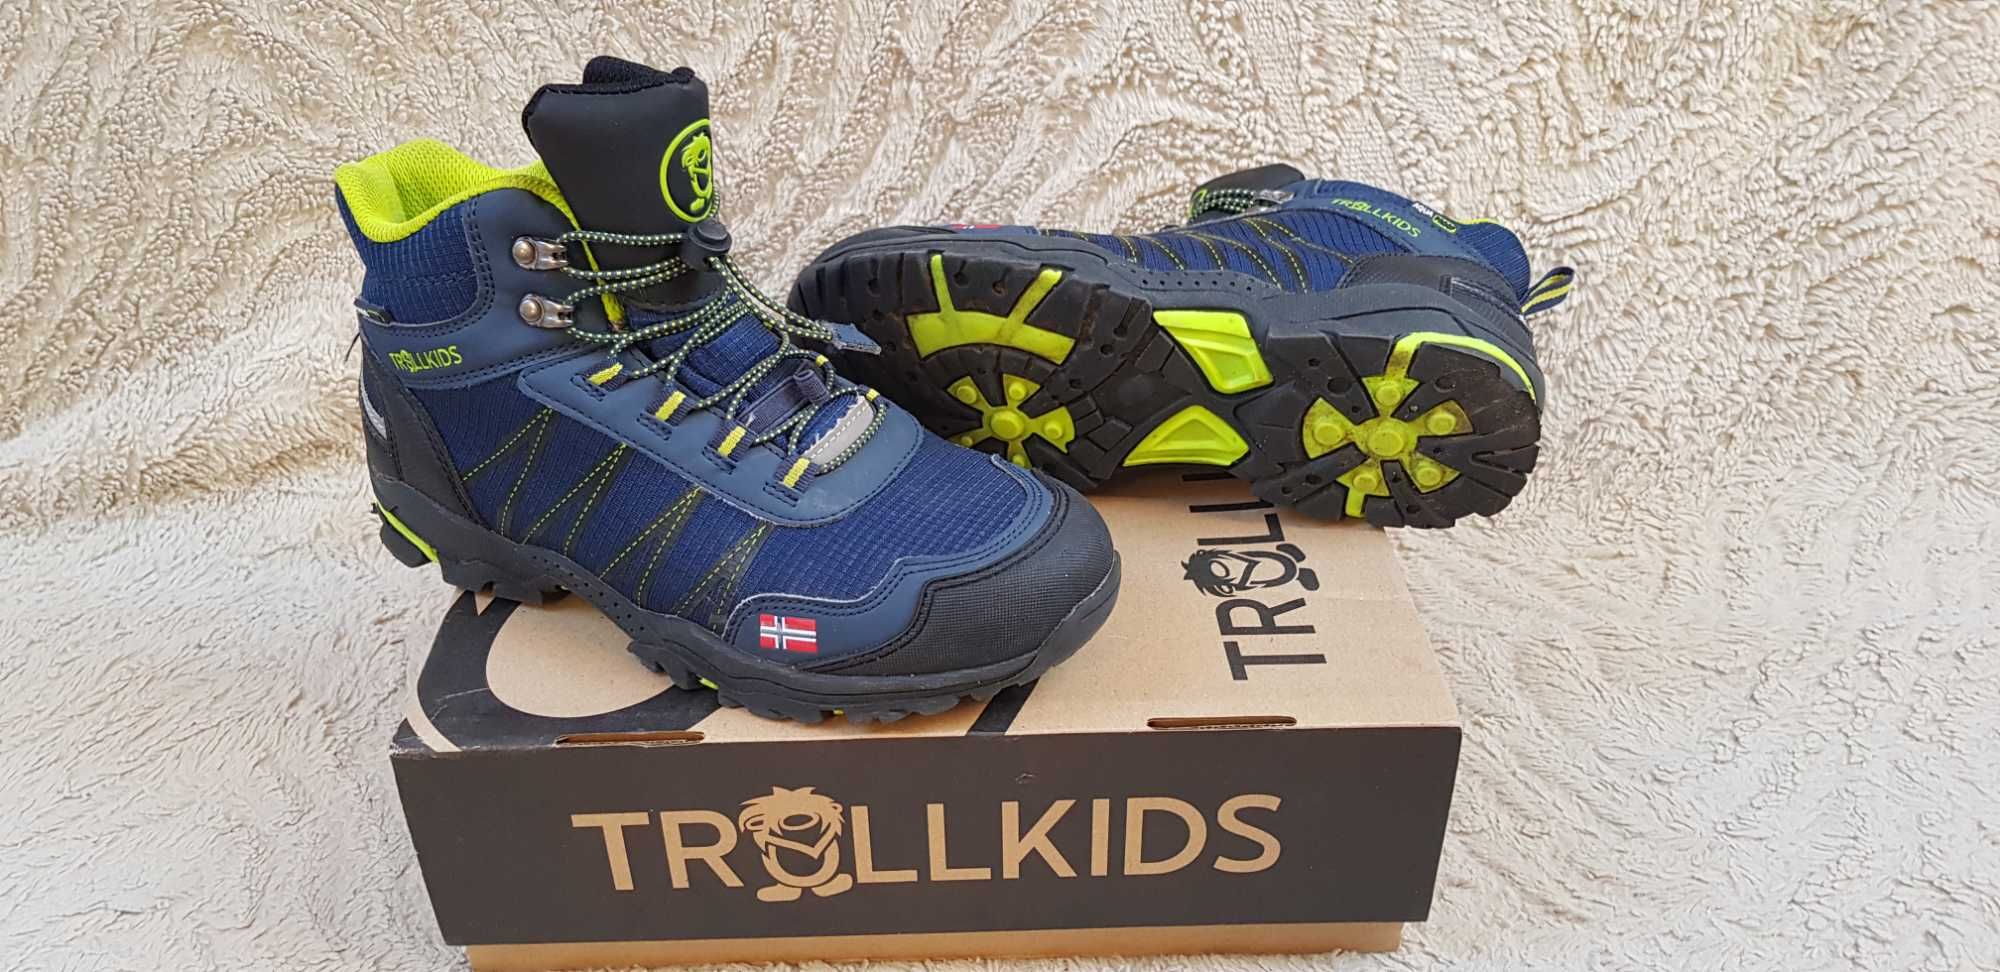 Buty trekkingowe młodzieżowe/chłopięce TrollKids, rozm.39 (25cm)